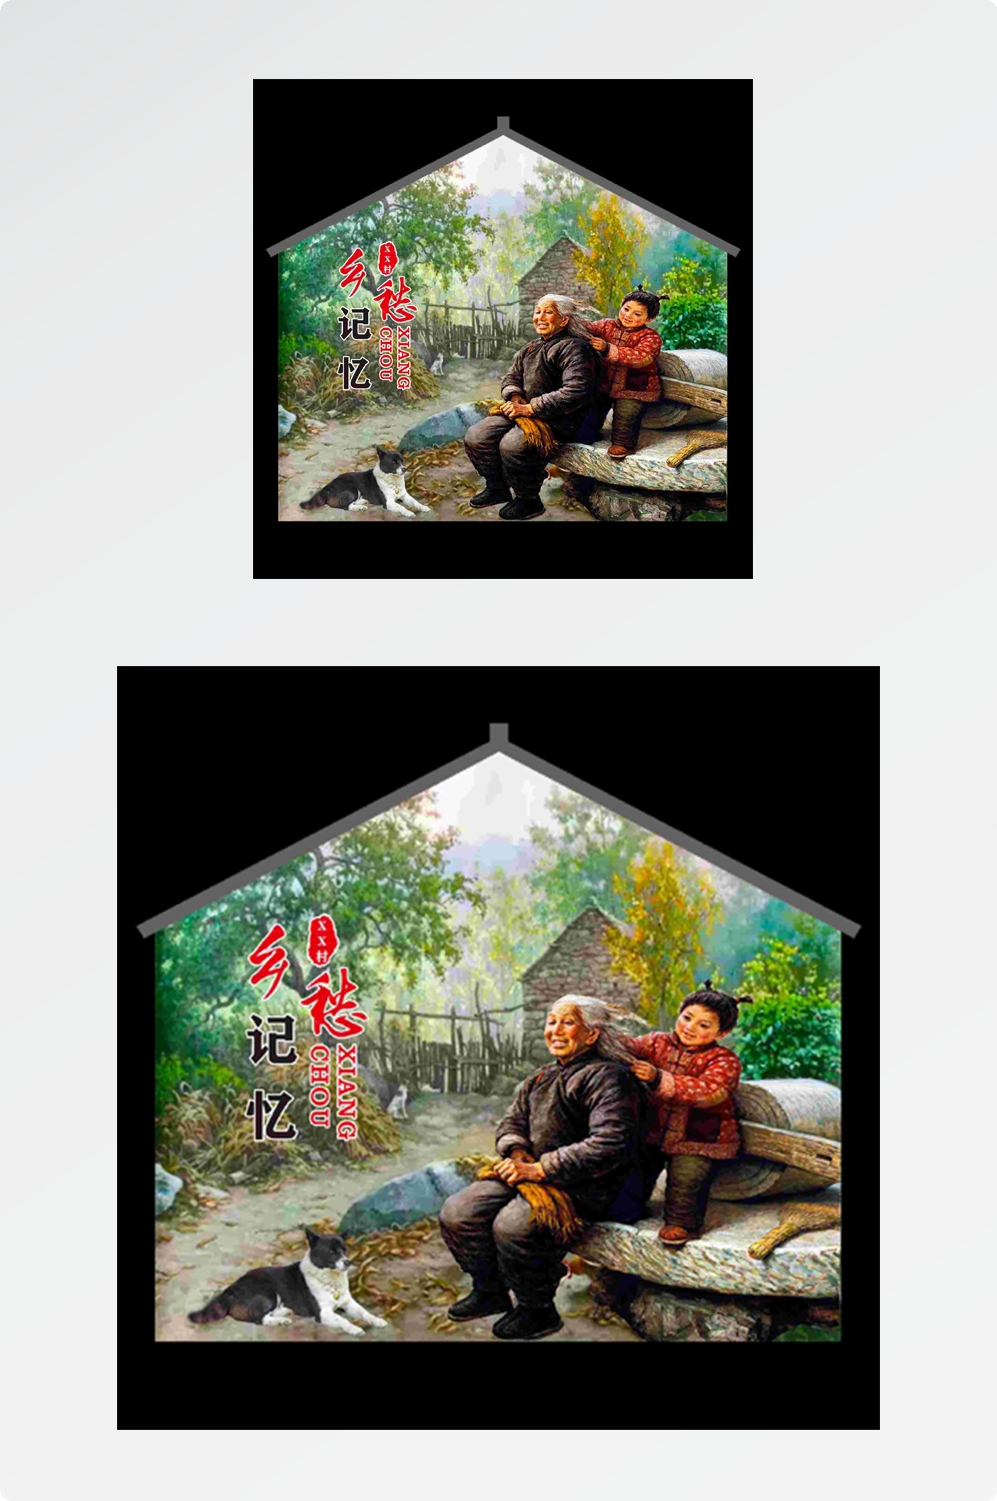 美丽乡村3D乡愁记忆人物场景墙绘素材模板 (17)